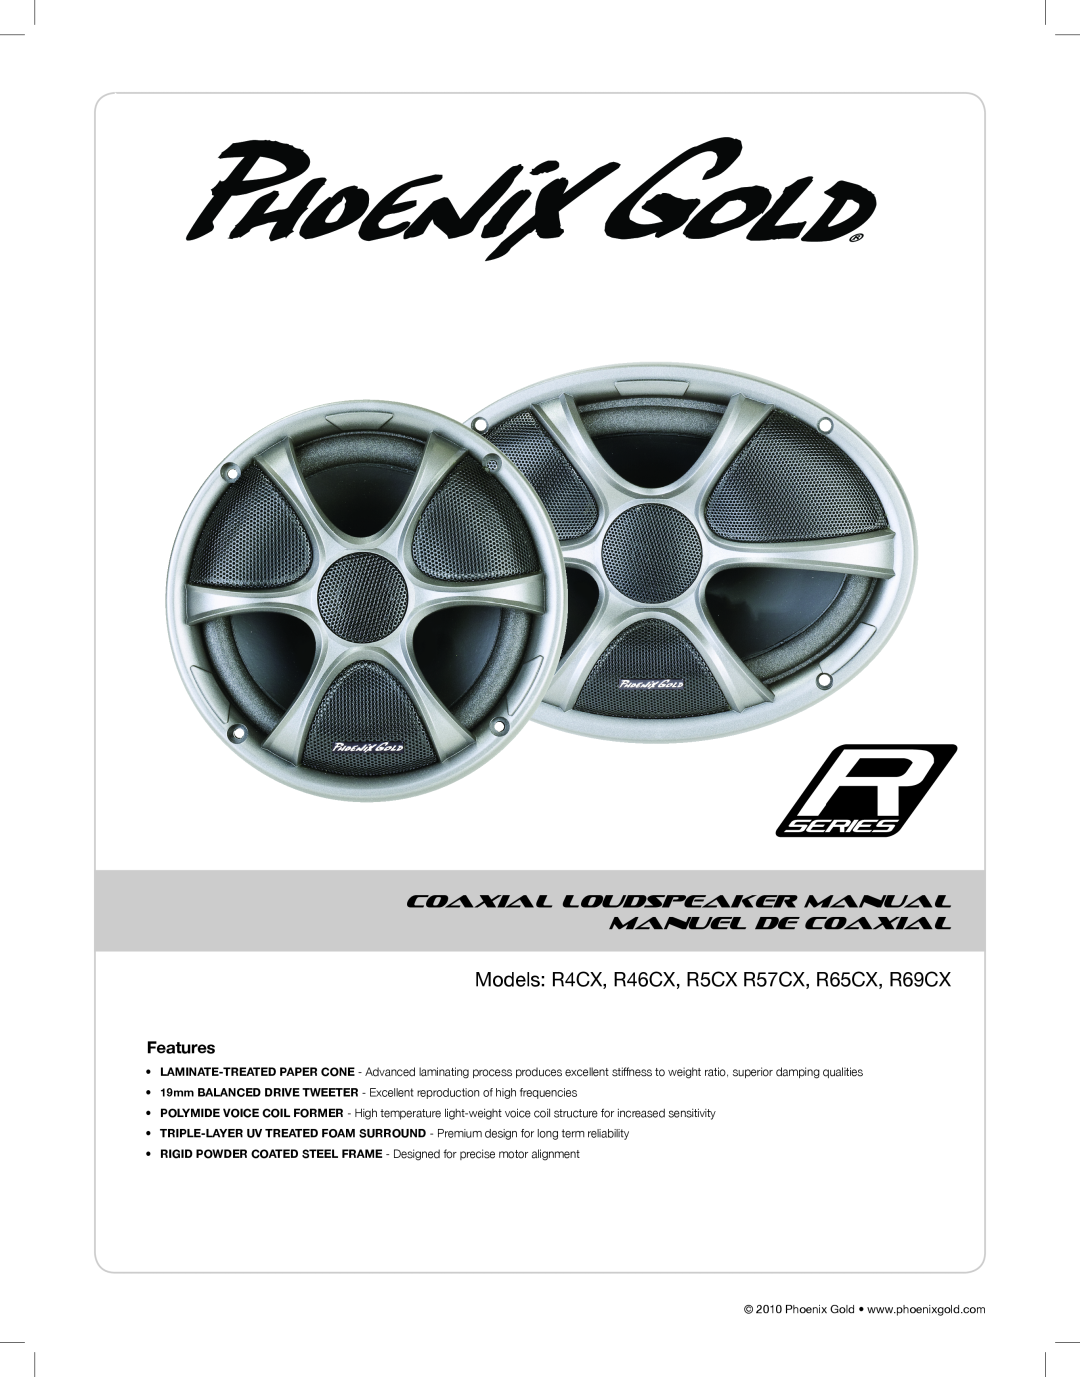 Phoenix Gold manual Models R4CX, R46CX, R5CX R57CX, R65CX, R69CX, Coaxial Loudspeaker Manual Manuel De Coaxial 